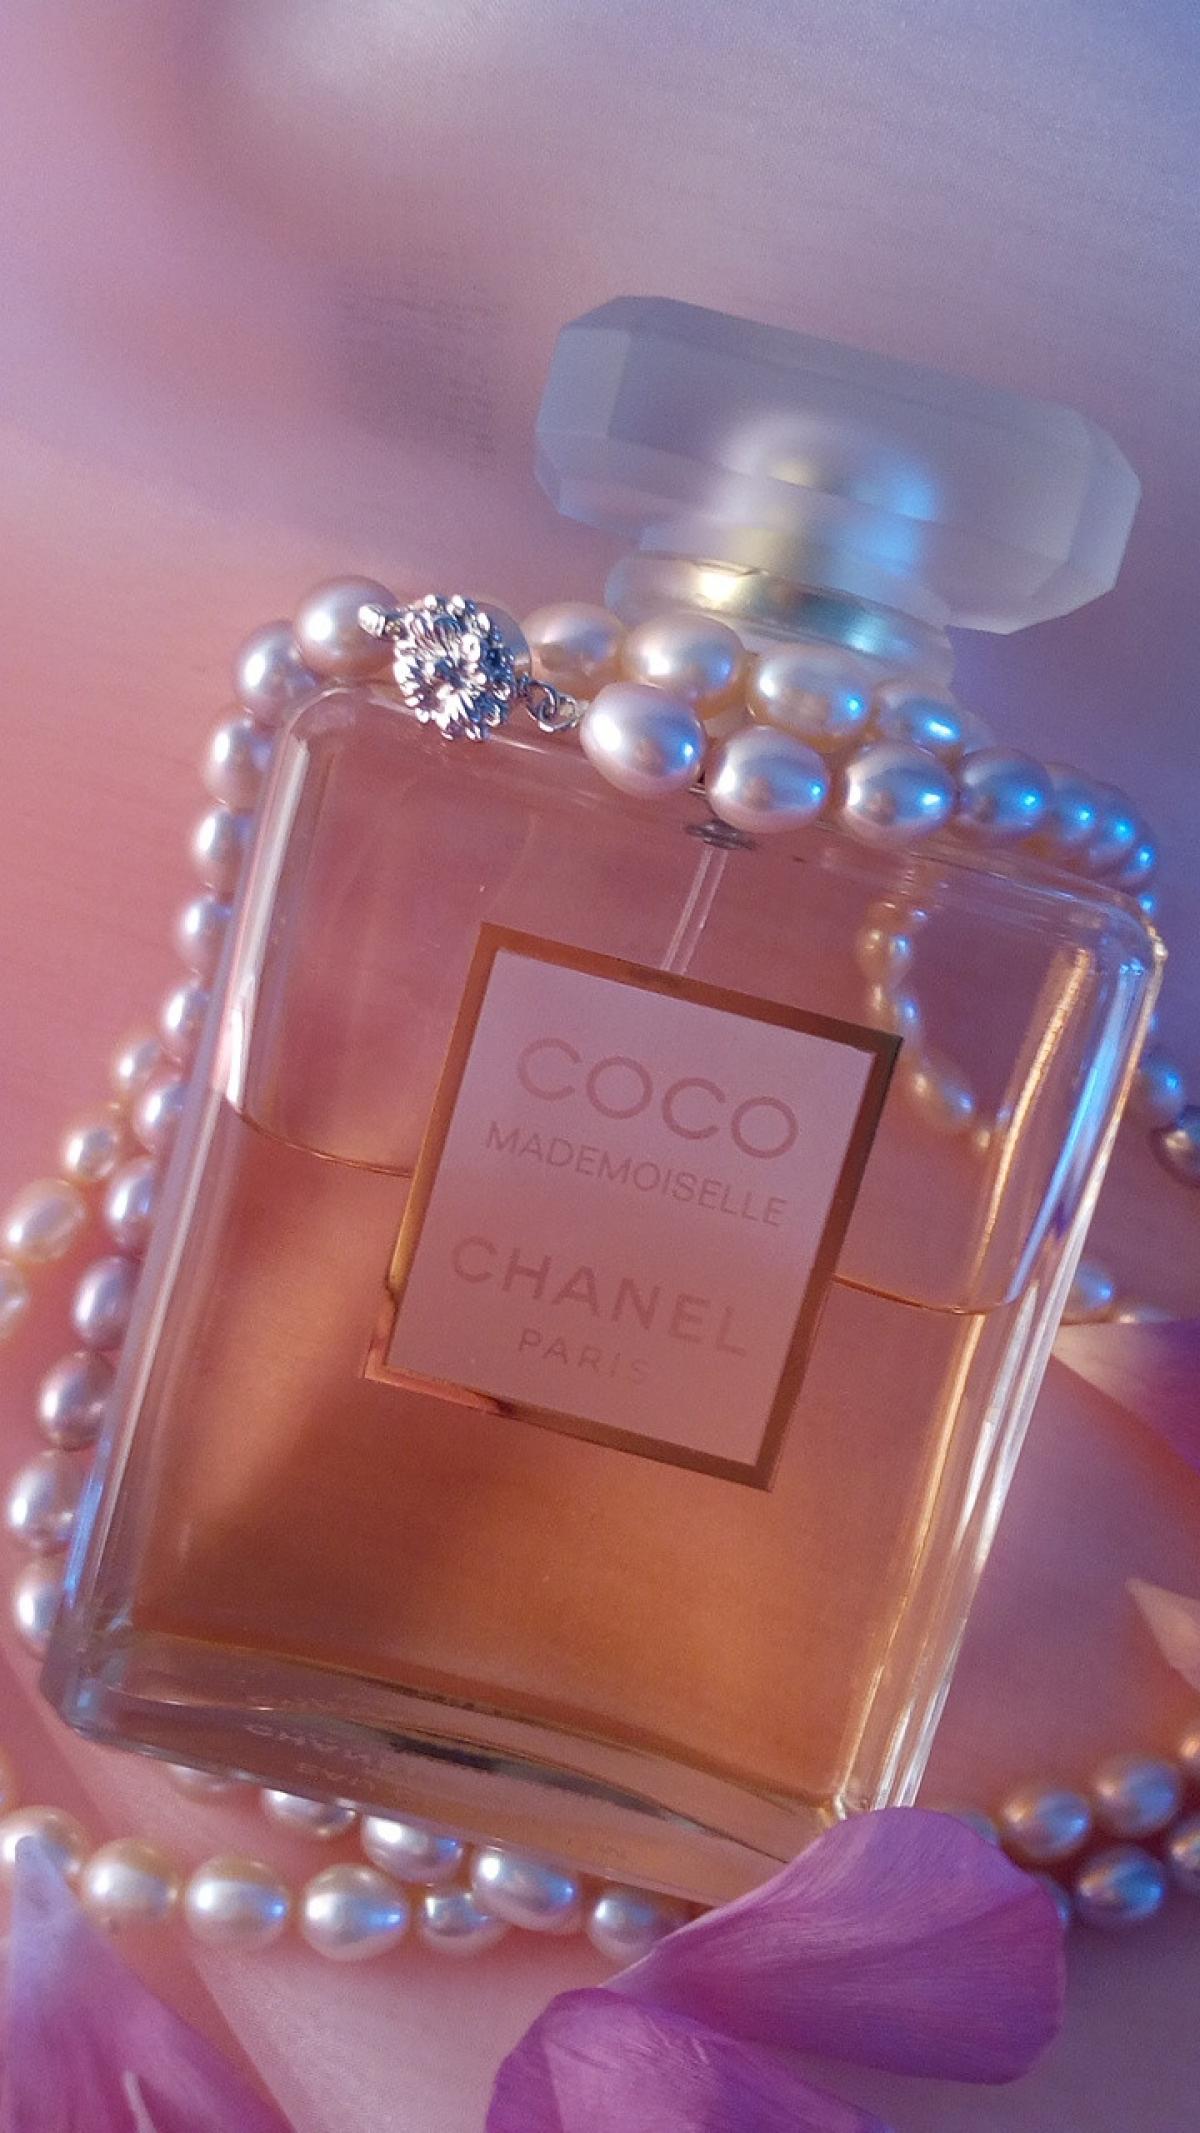 Coco Mademoiselle Chanel Parfum ein es Parfum für Frauen